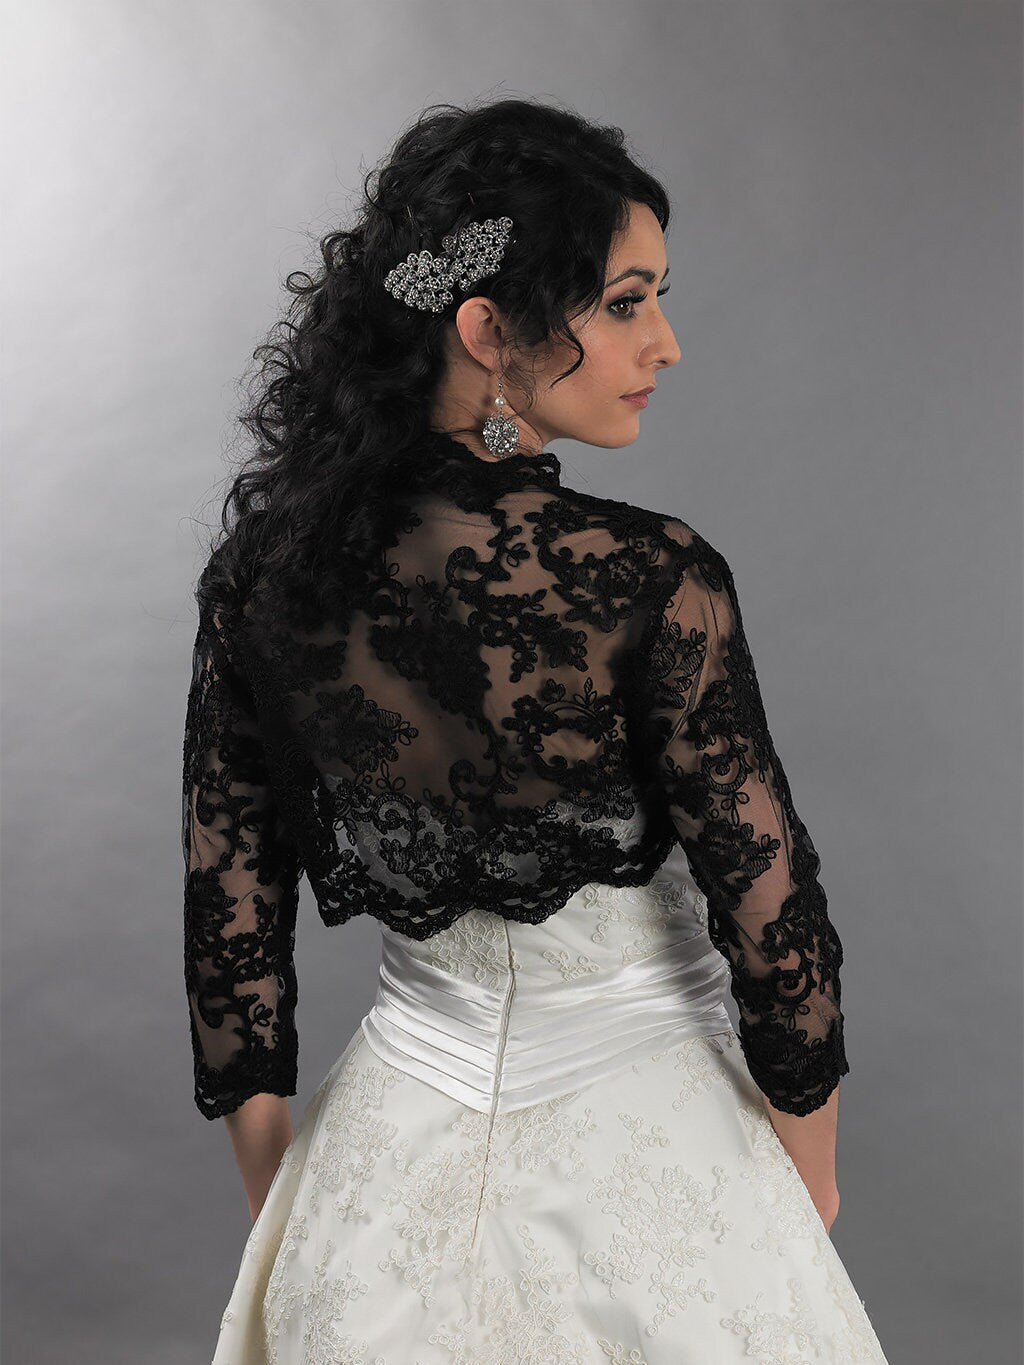 Black wedding bolero lace bolero bridal bolero jacket black bolero 3/4 sleeve lace bolero wedding dress topper alencon lace